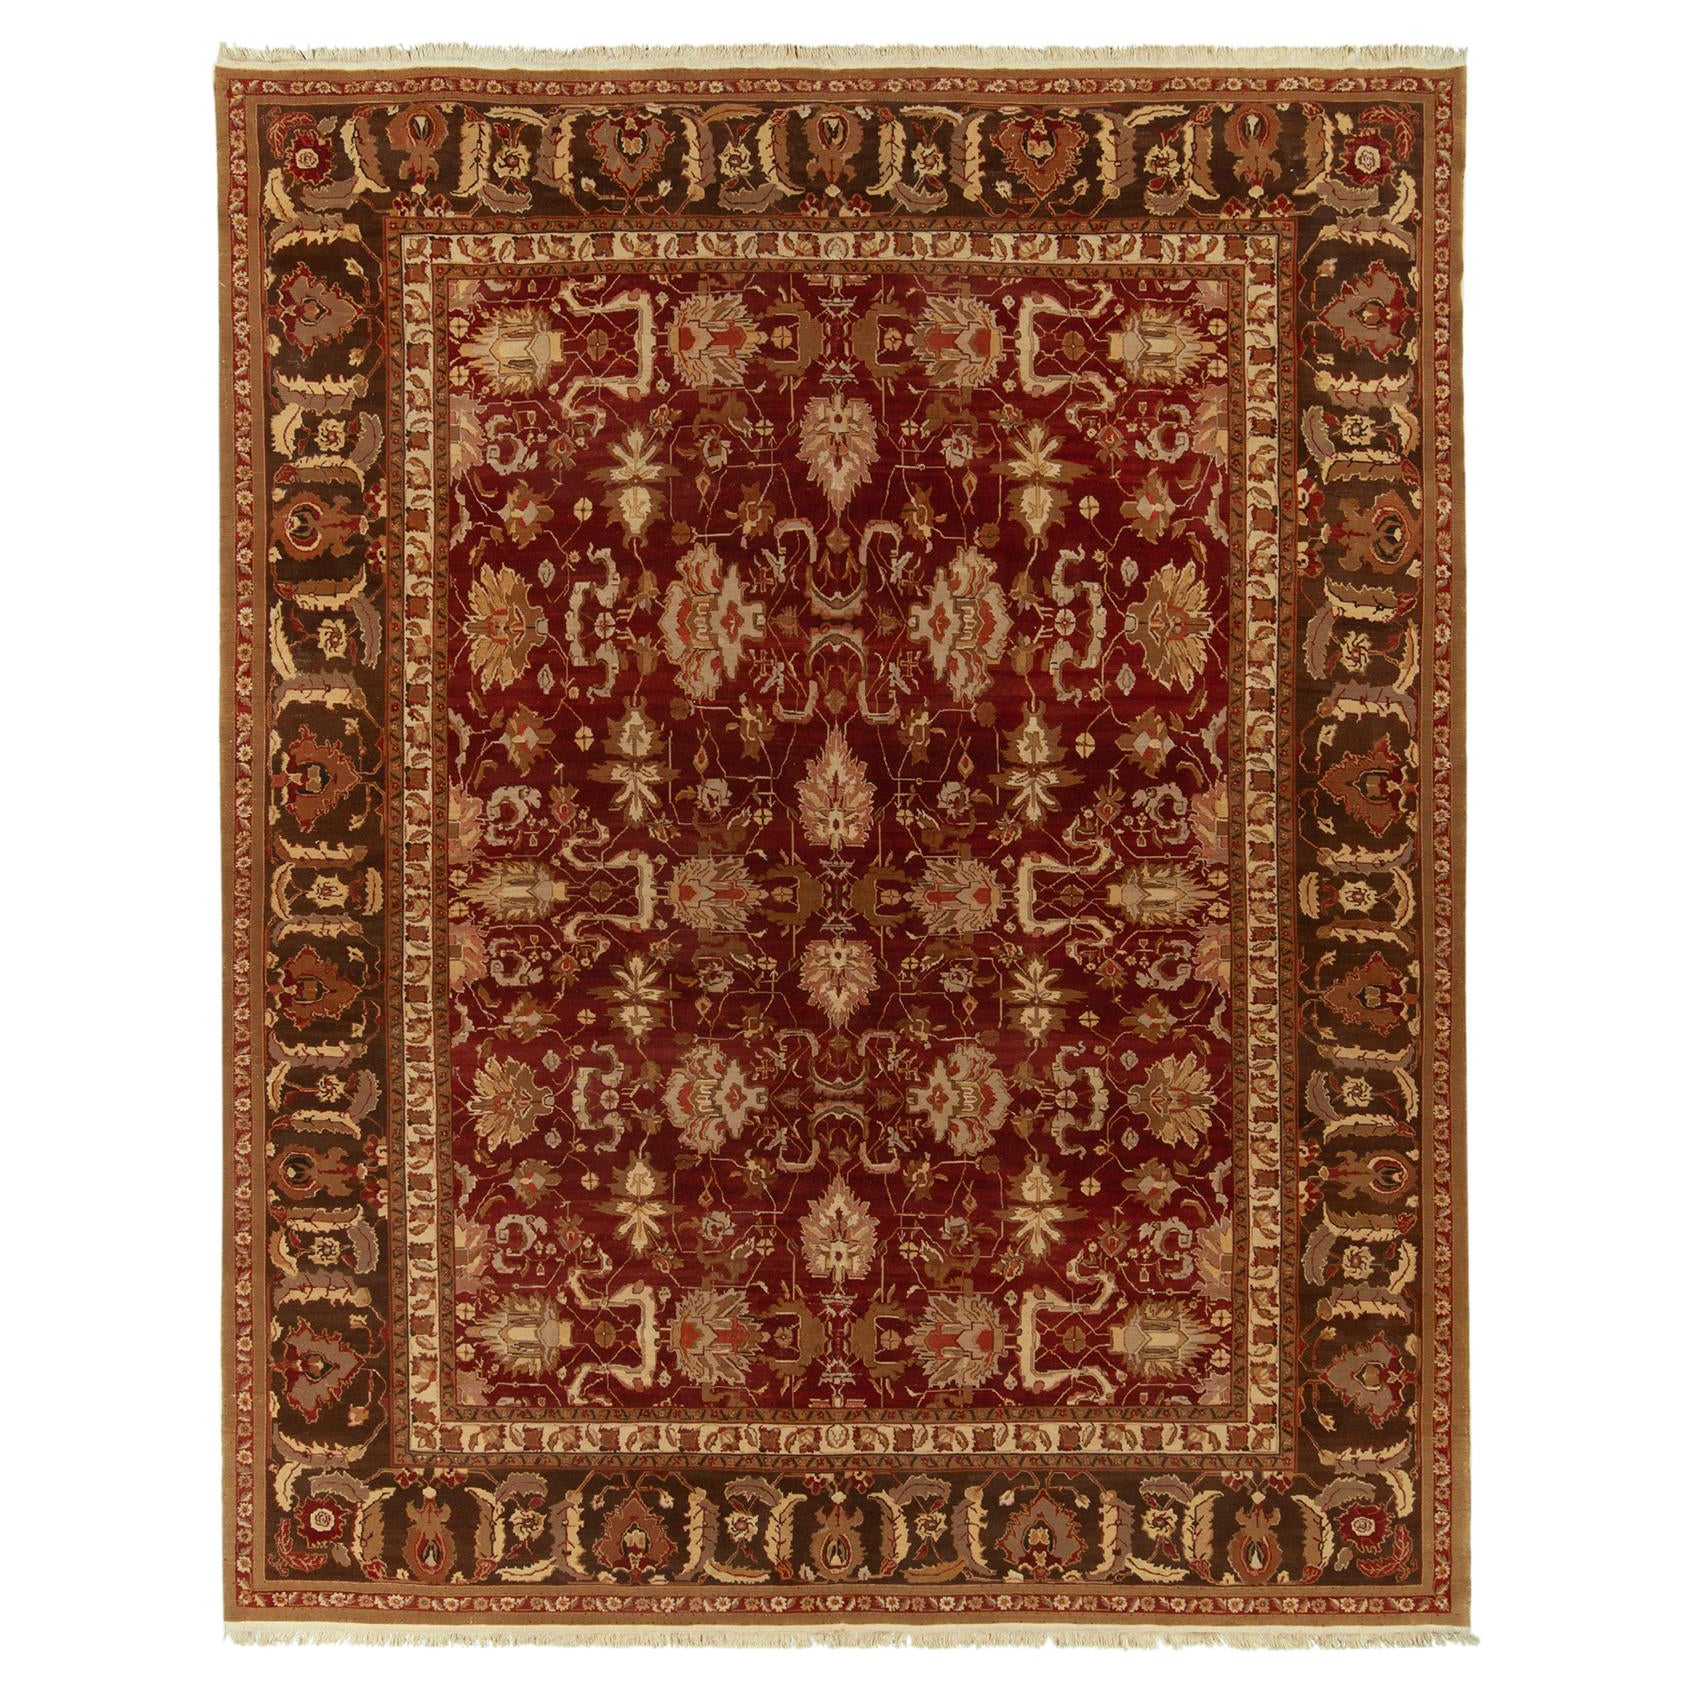 Traditioneller Teppich und Kelim-Teppich im Agra-Stil mit rotem, beigefarbenem und braunem Blumenmuster